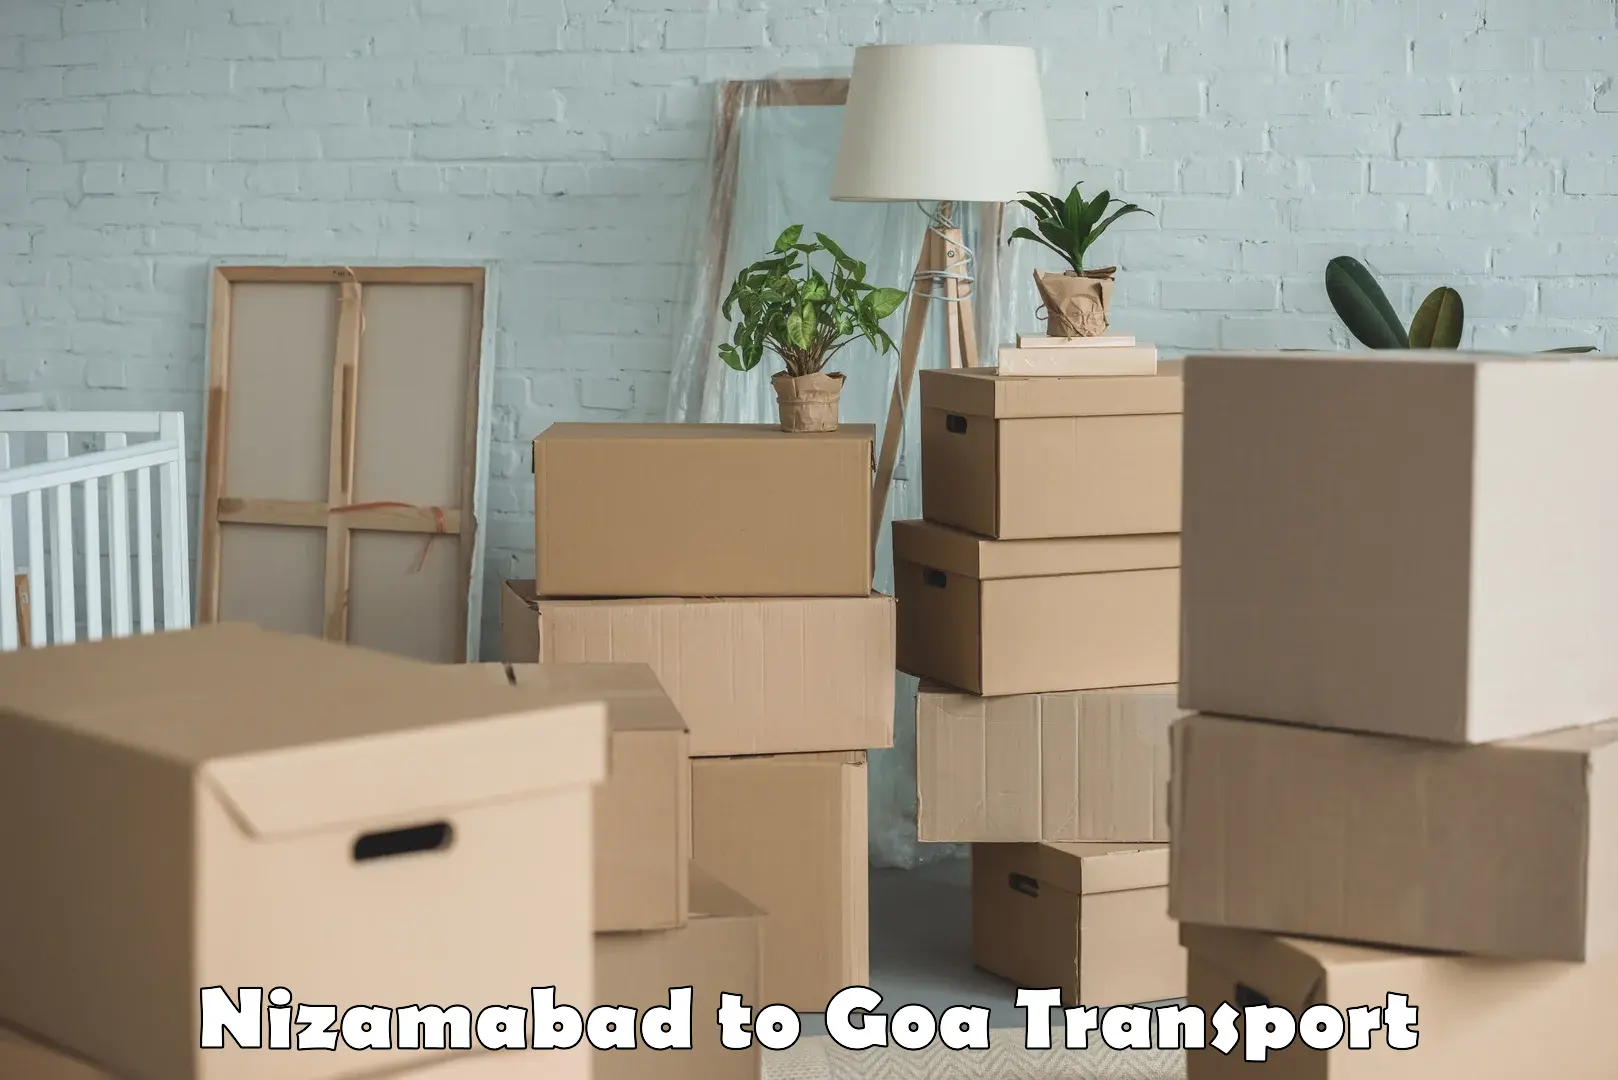 Commercial transport service Nizamabad to Goa University